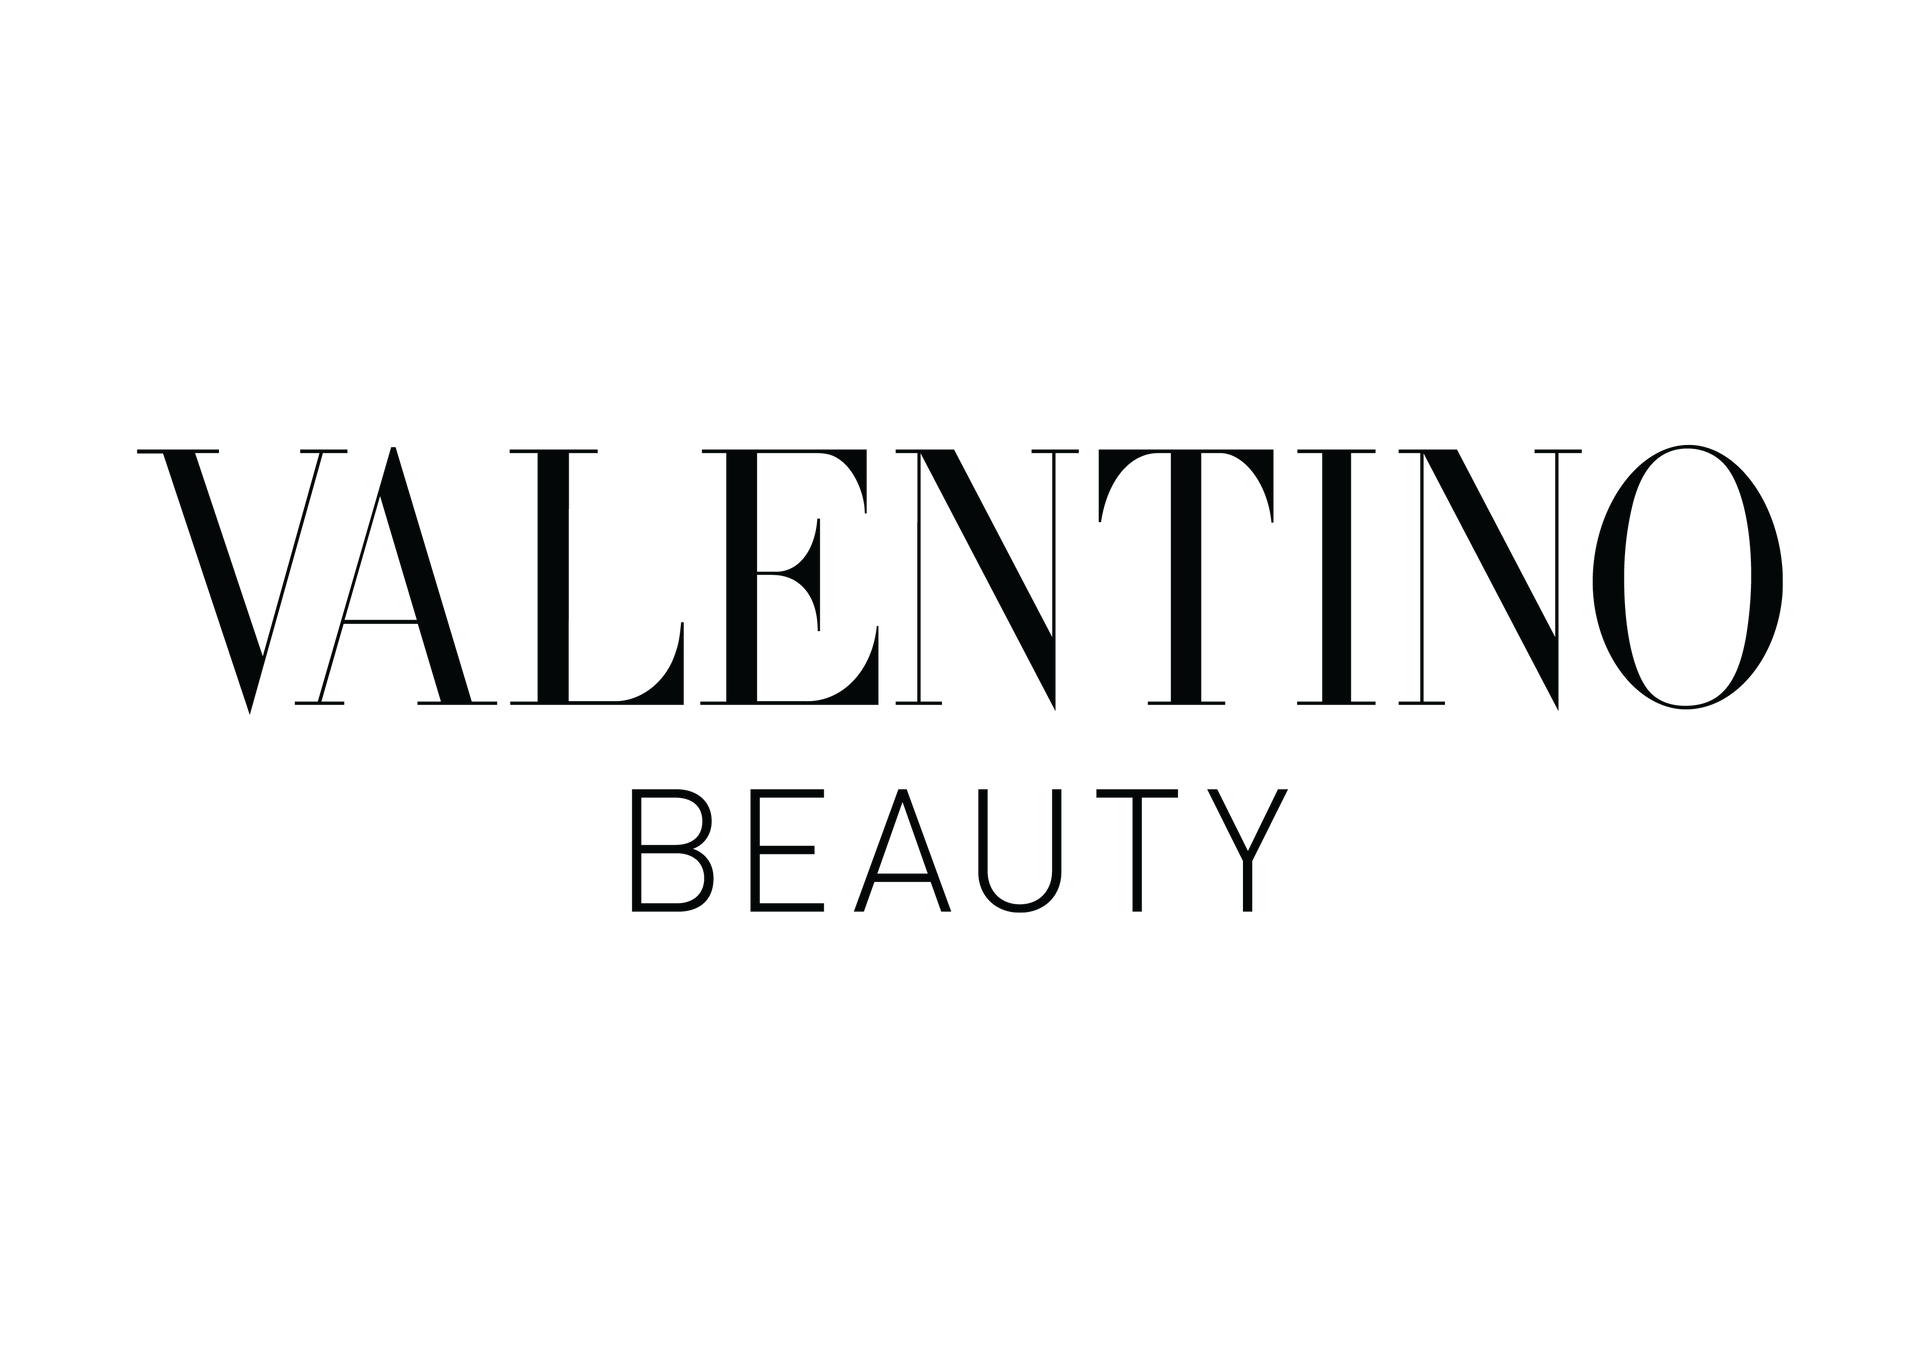 Valentino Beauty